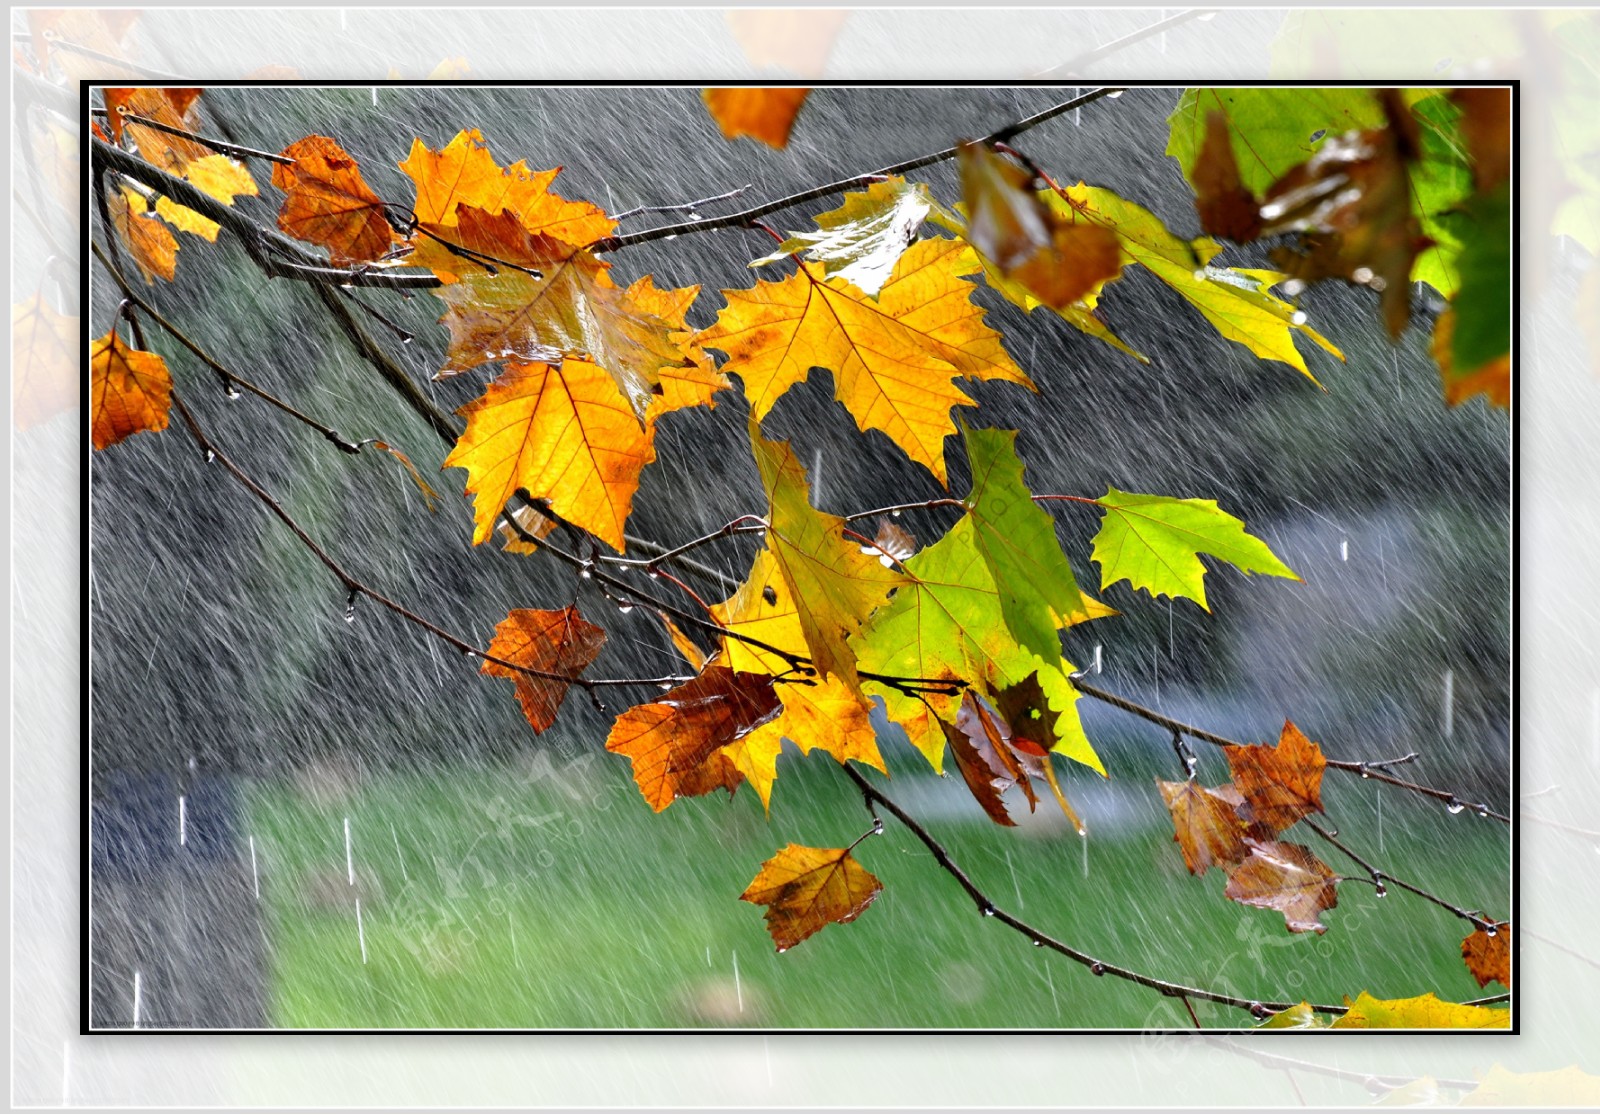 秋天的雨图片大全